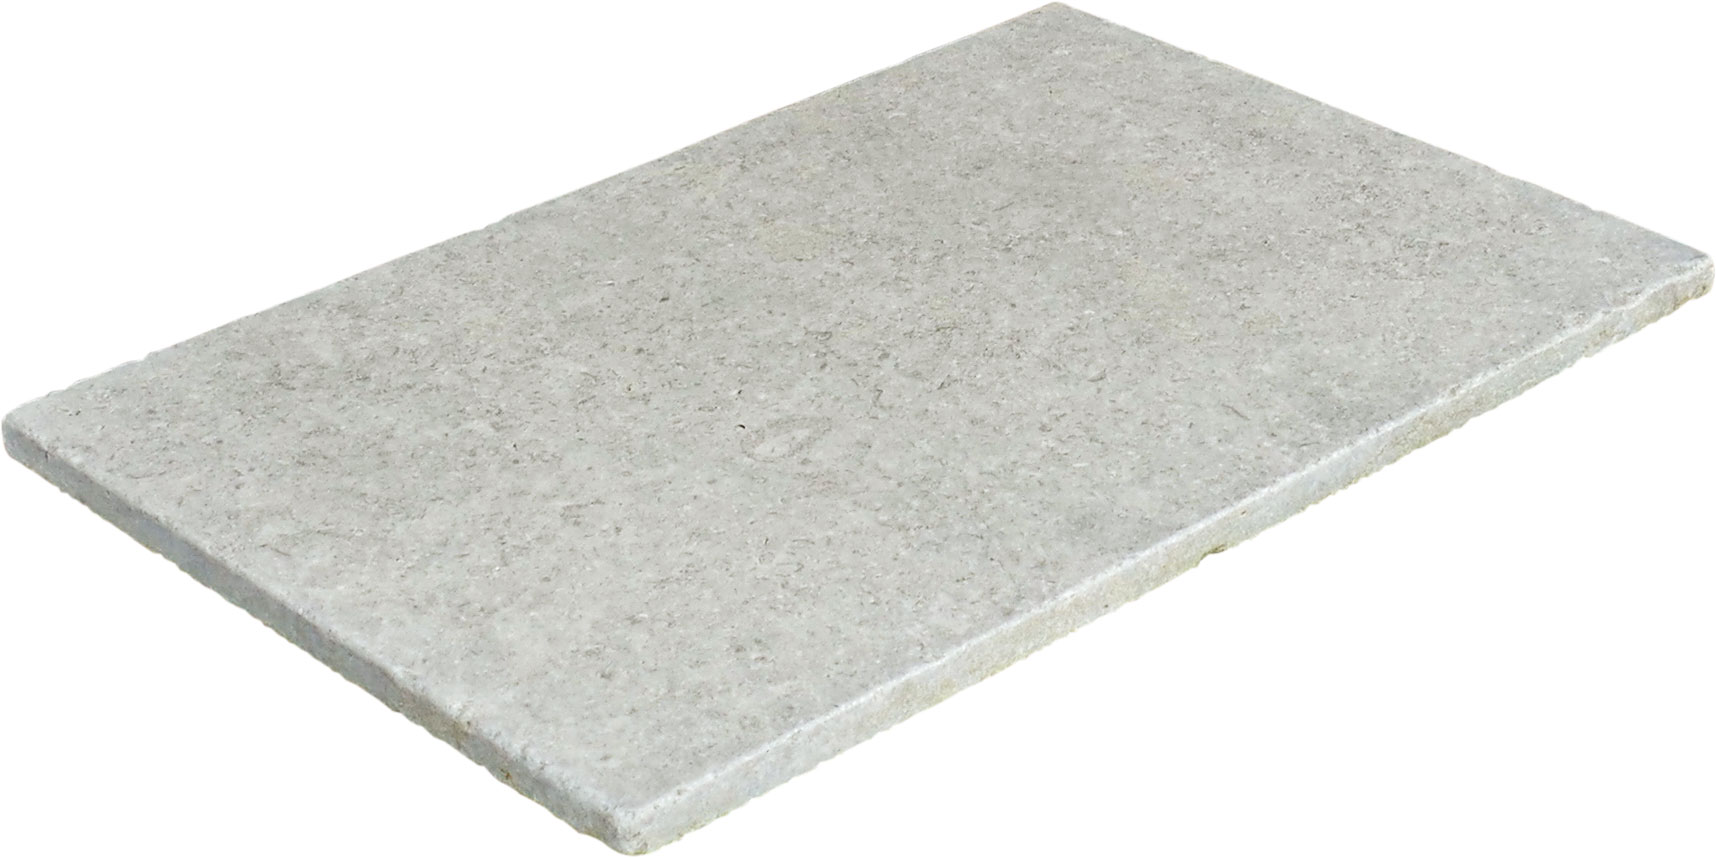 deevert - dalle en pierre naturelle – calcaire ep 2 cm - 02